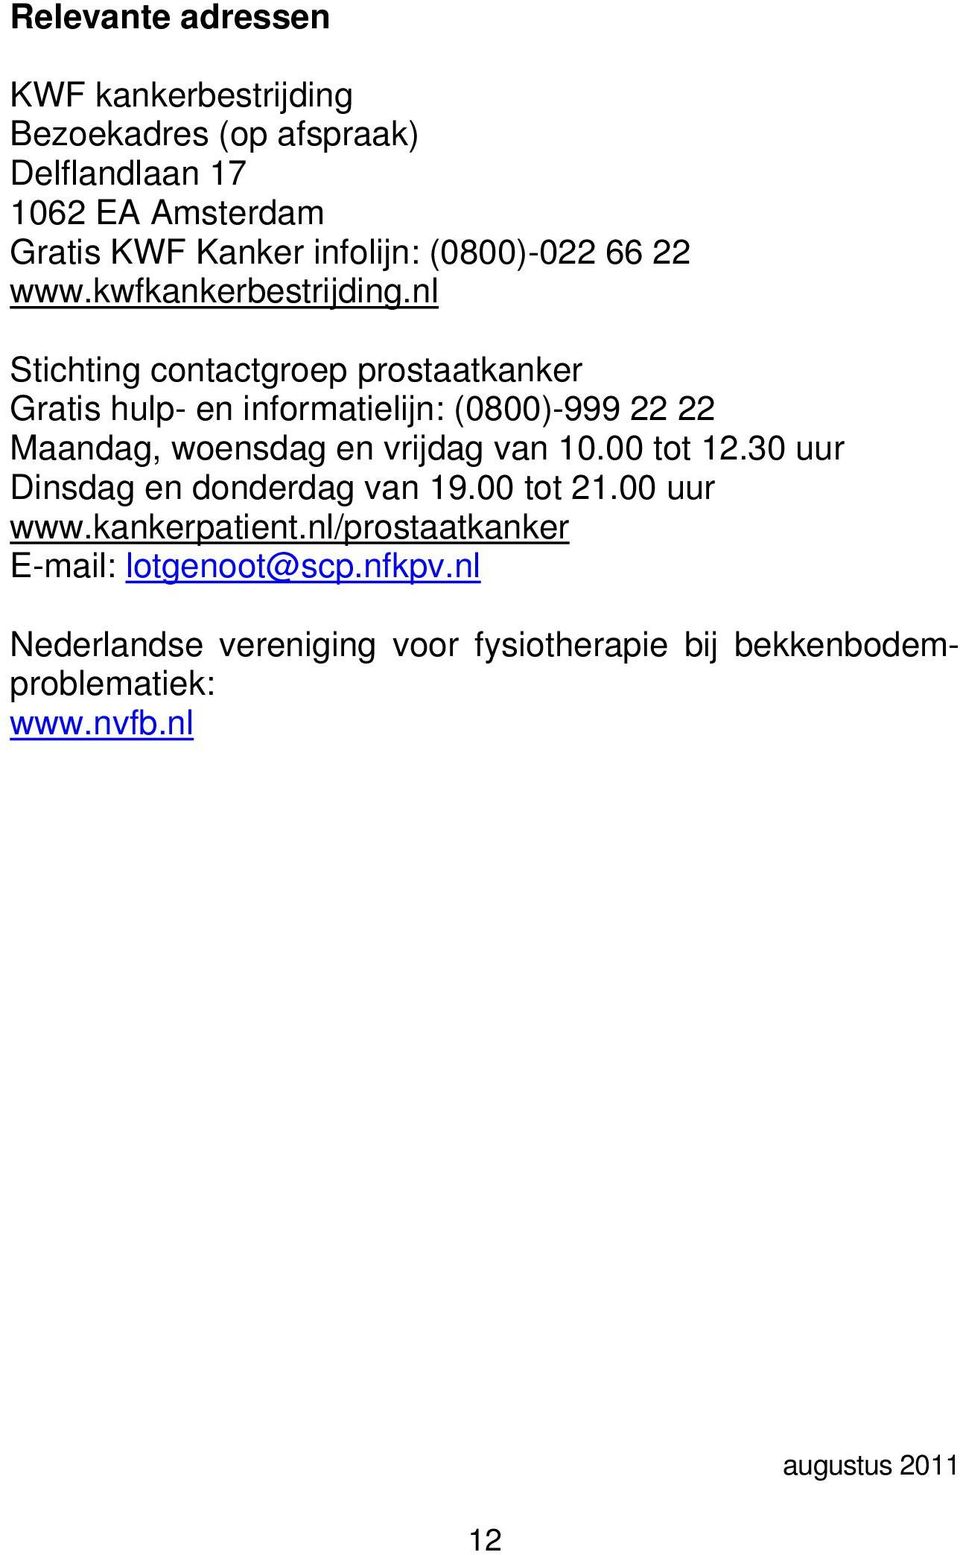 nl Stichting contactgroep prostaatkanker Gratis hulp- en informatielijn: (0800)-999 22 22 Maandag, woensdag en vrijdag van 10.